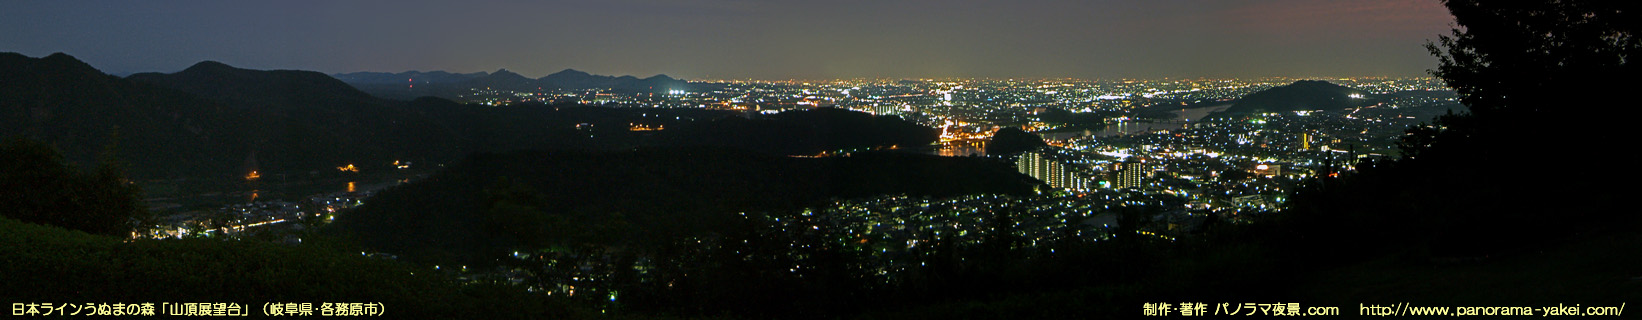 日本ラインうぬまの森「山頂展望台」からのパノラマ夜景写真